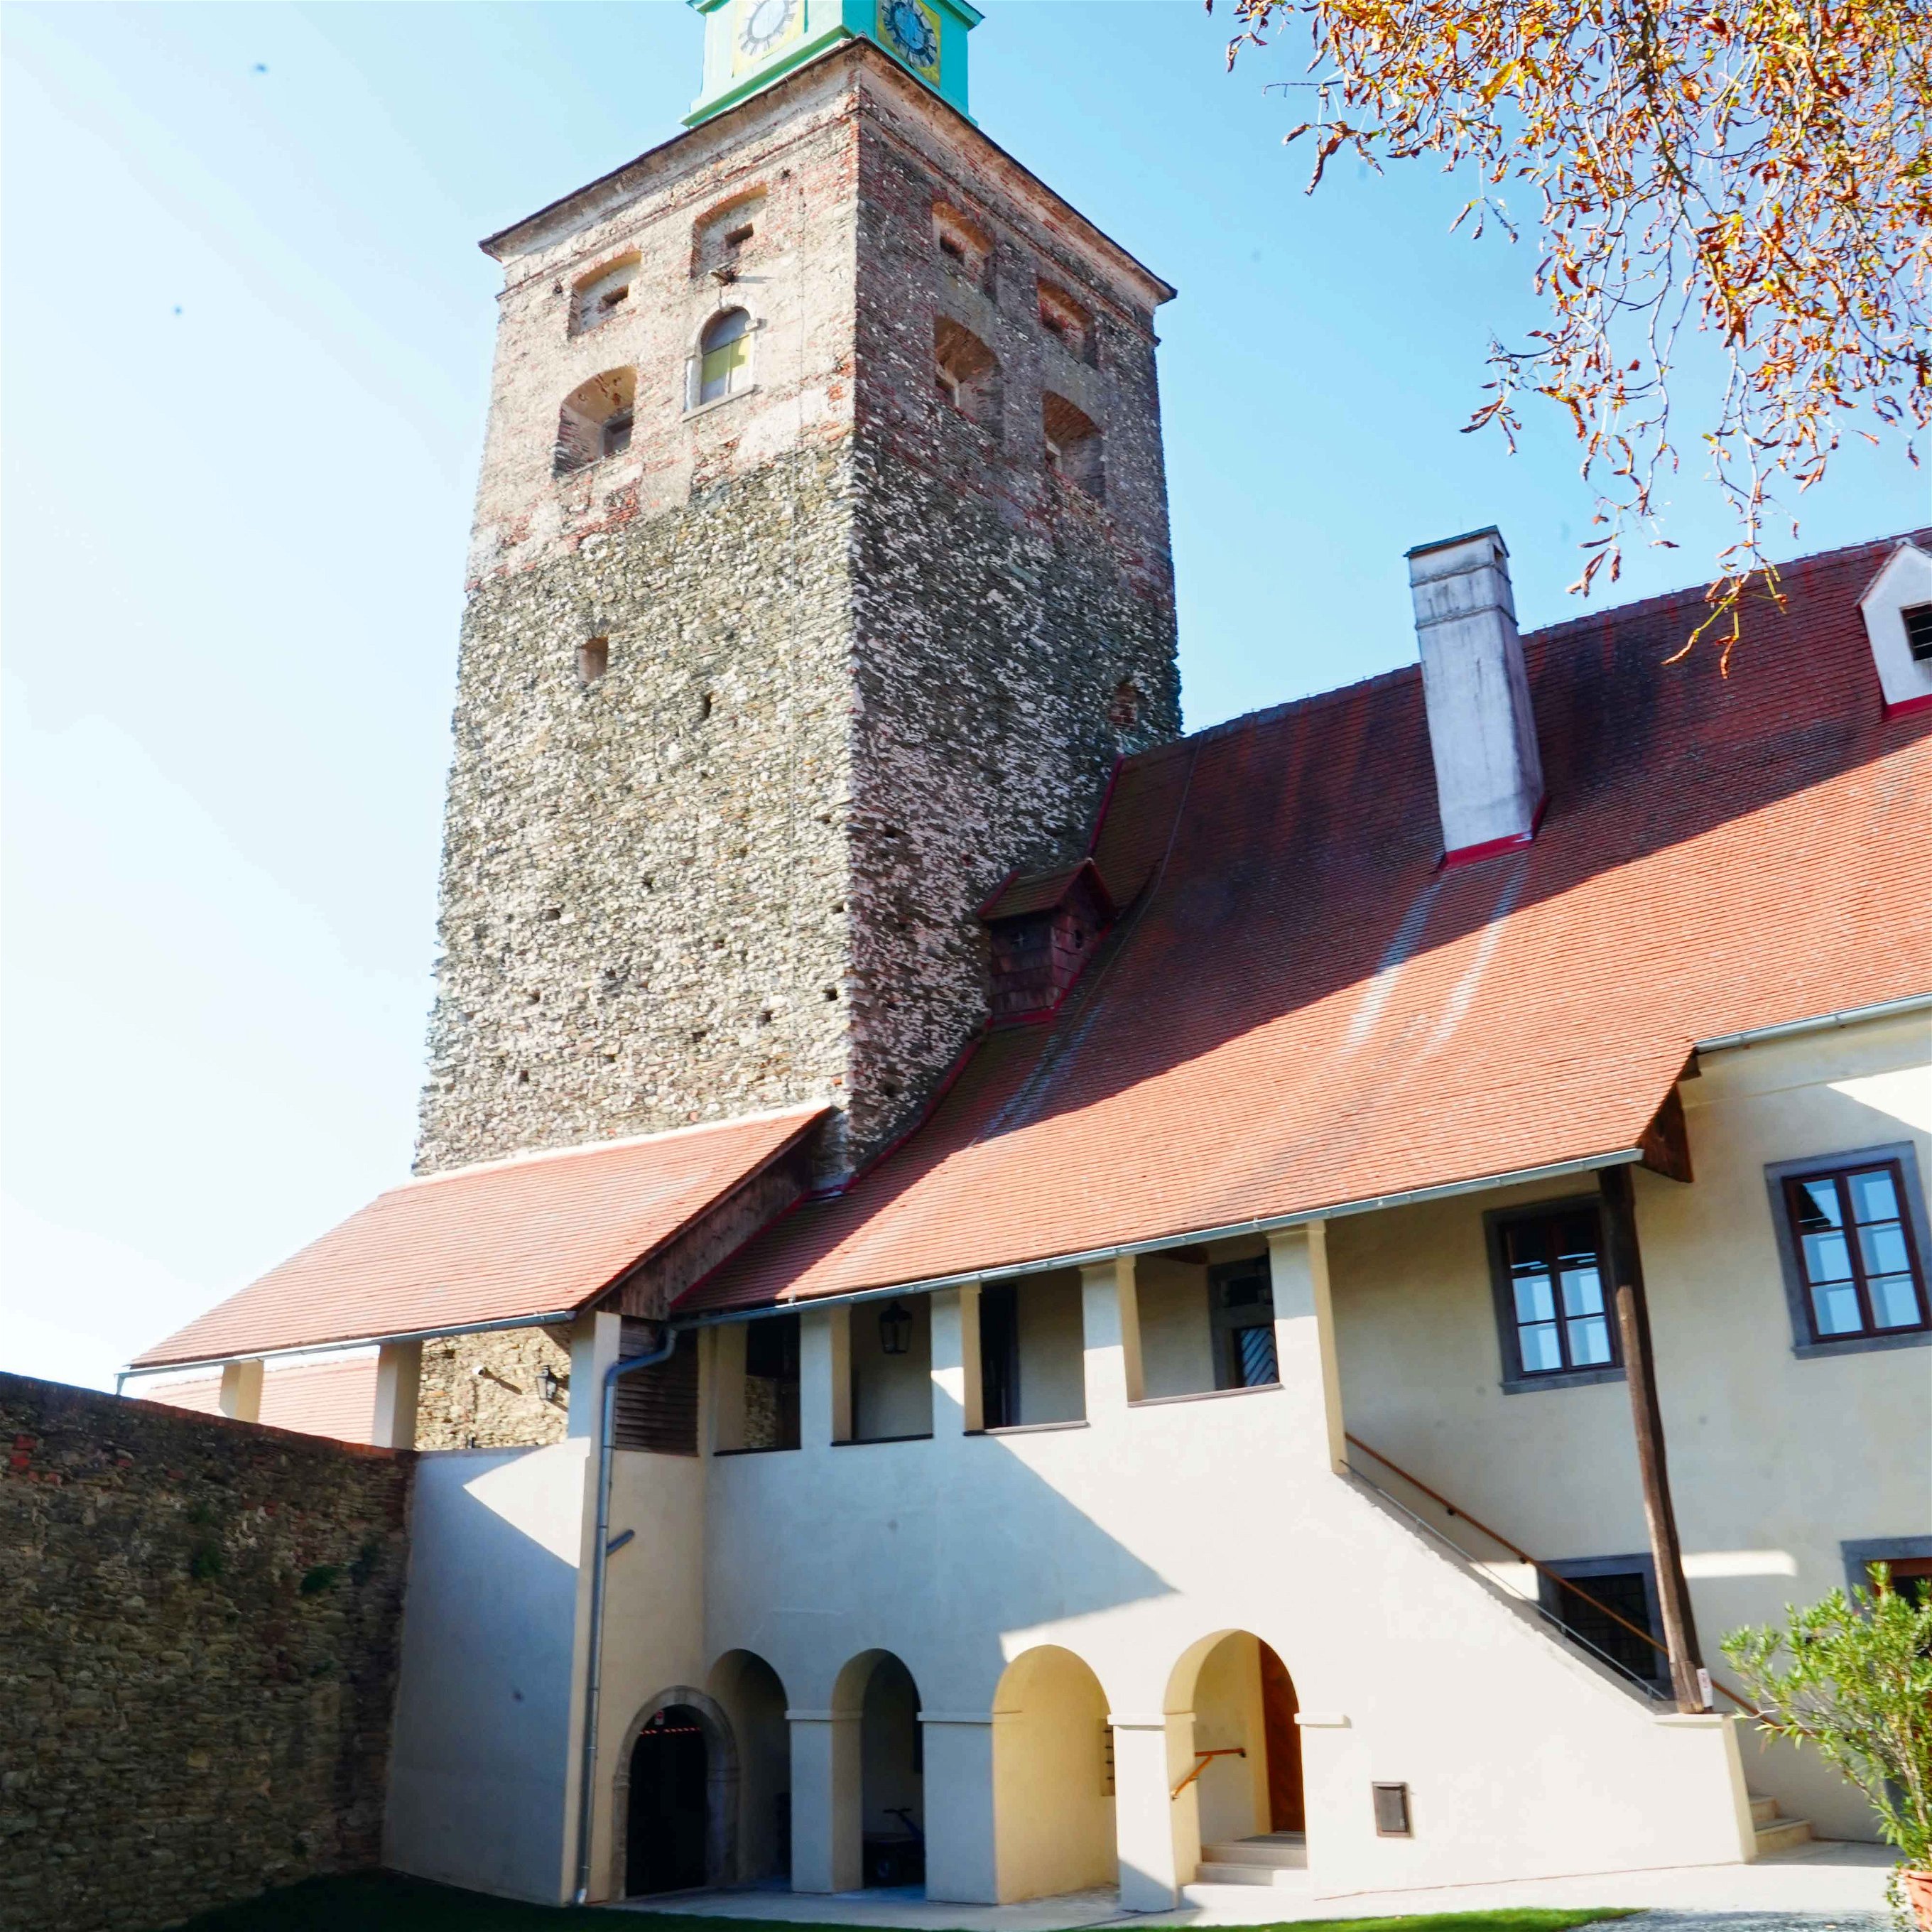 Die Friedensburg Schlaining&nbsp;(ungarisch Szalónak vár) liegt mitten im Ortskern von Stadtschlaining und wurde 1271 erstmals urkundlich erwähnt.